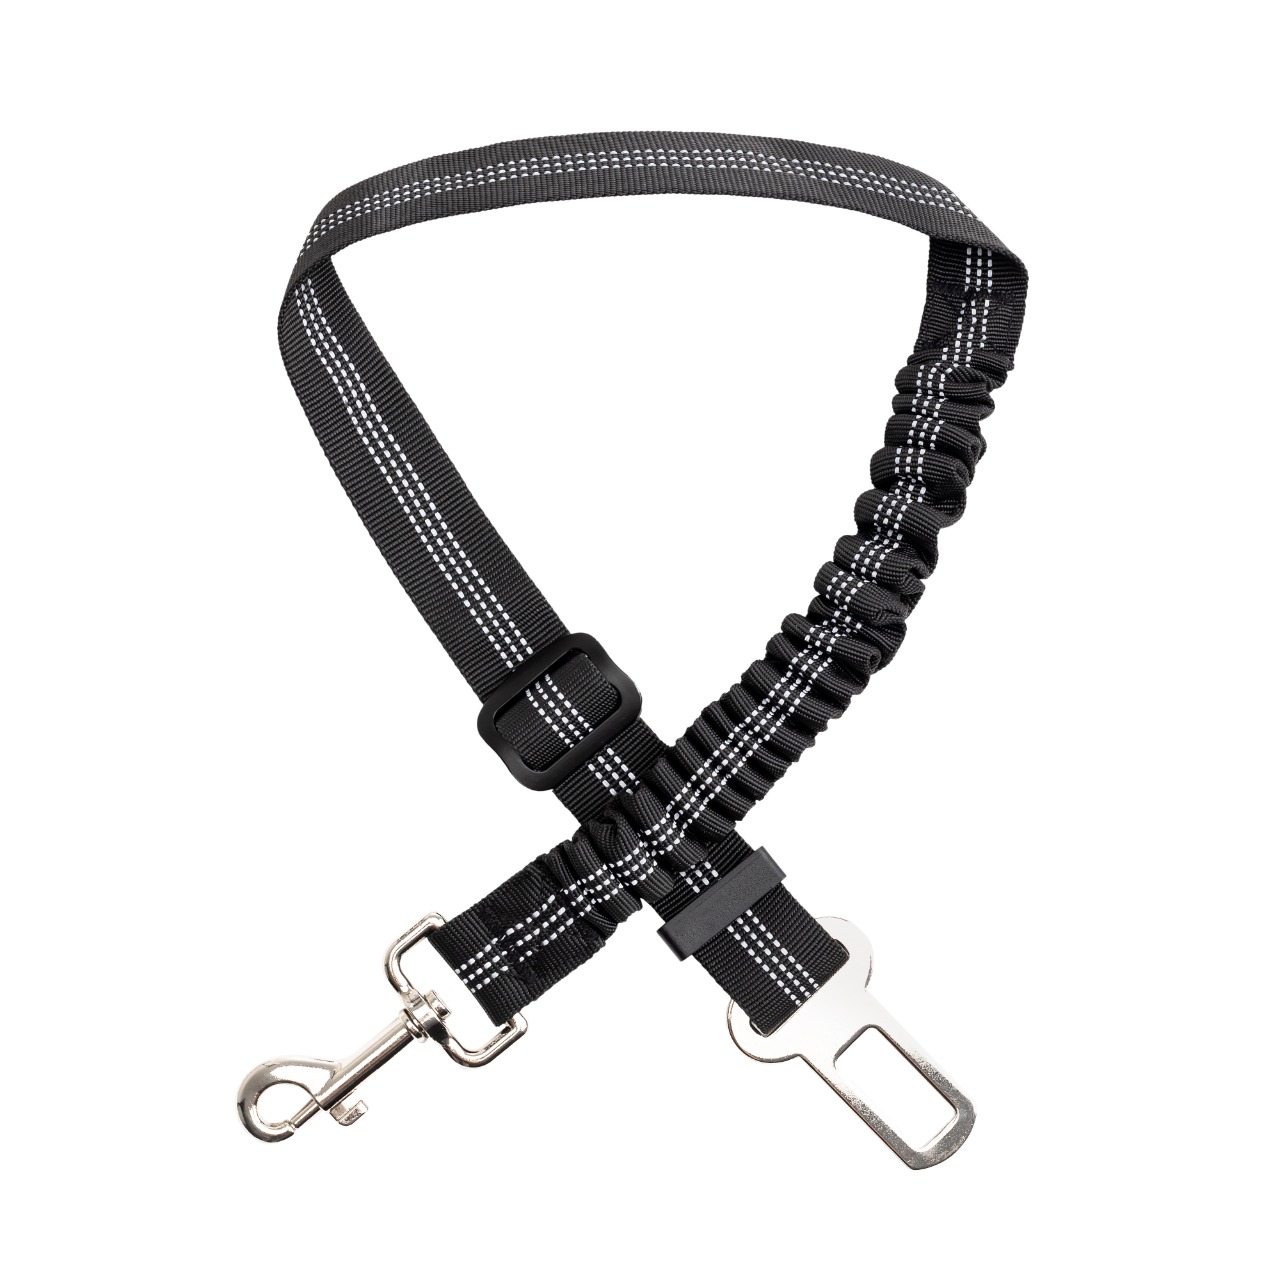 Mr. Pen- Dog Seat Belt, 2 Pack, Adjustable Dog Seat Belt for Car